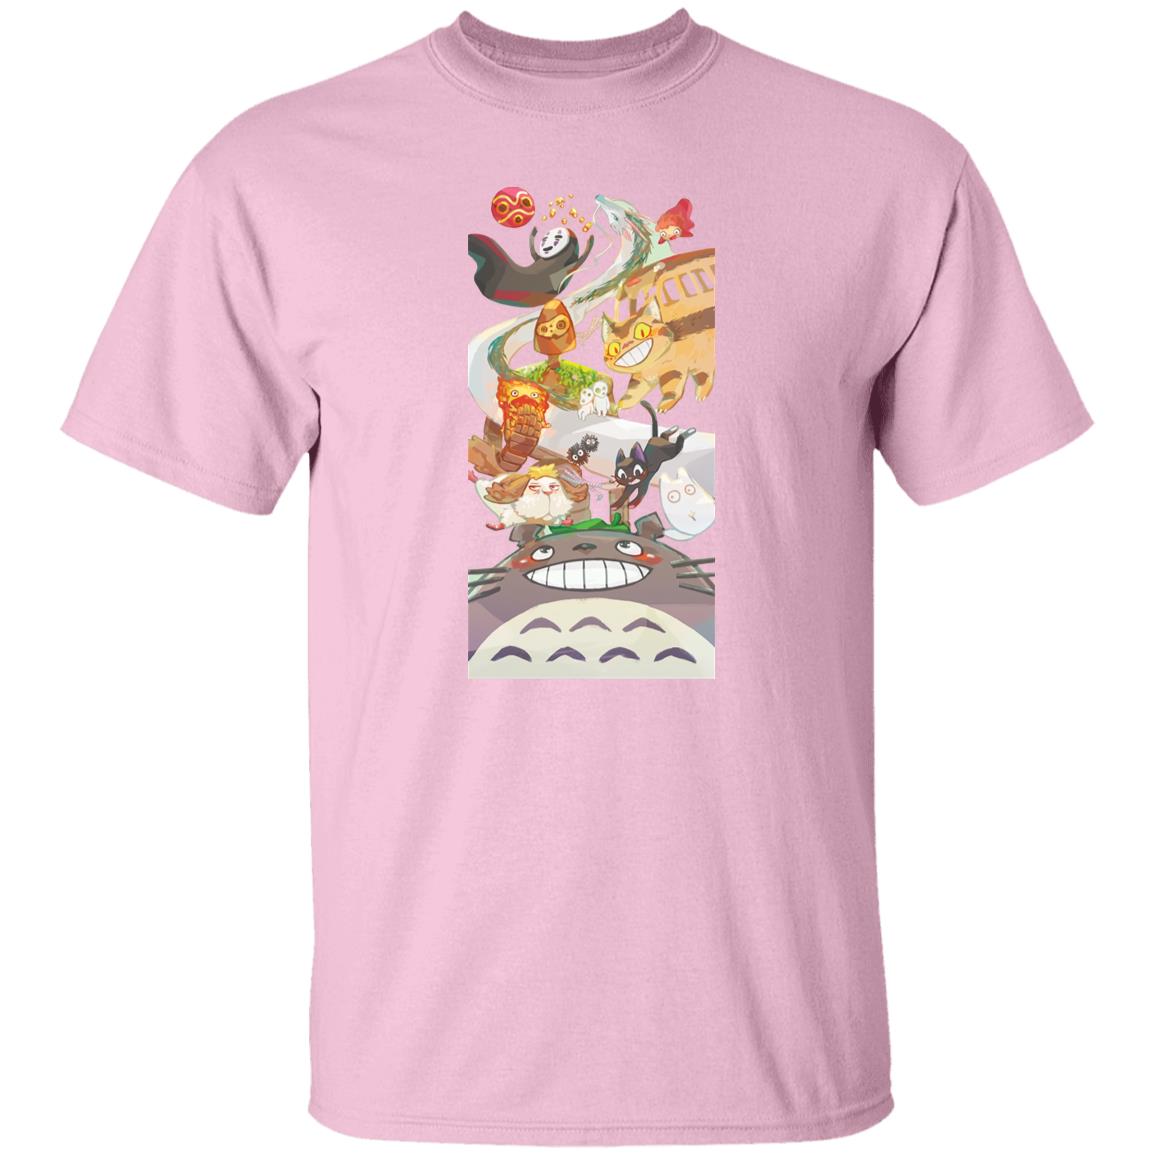 Totoro and Ghibli Friends Fanart T Shirt